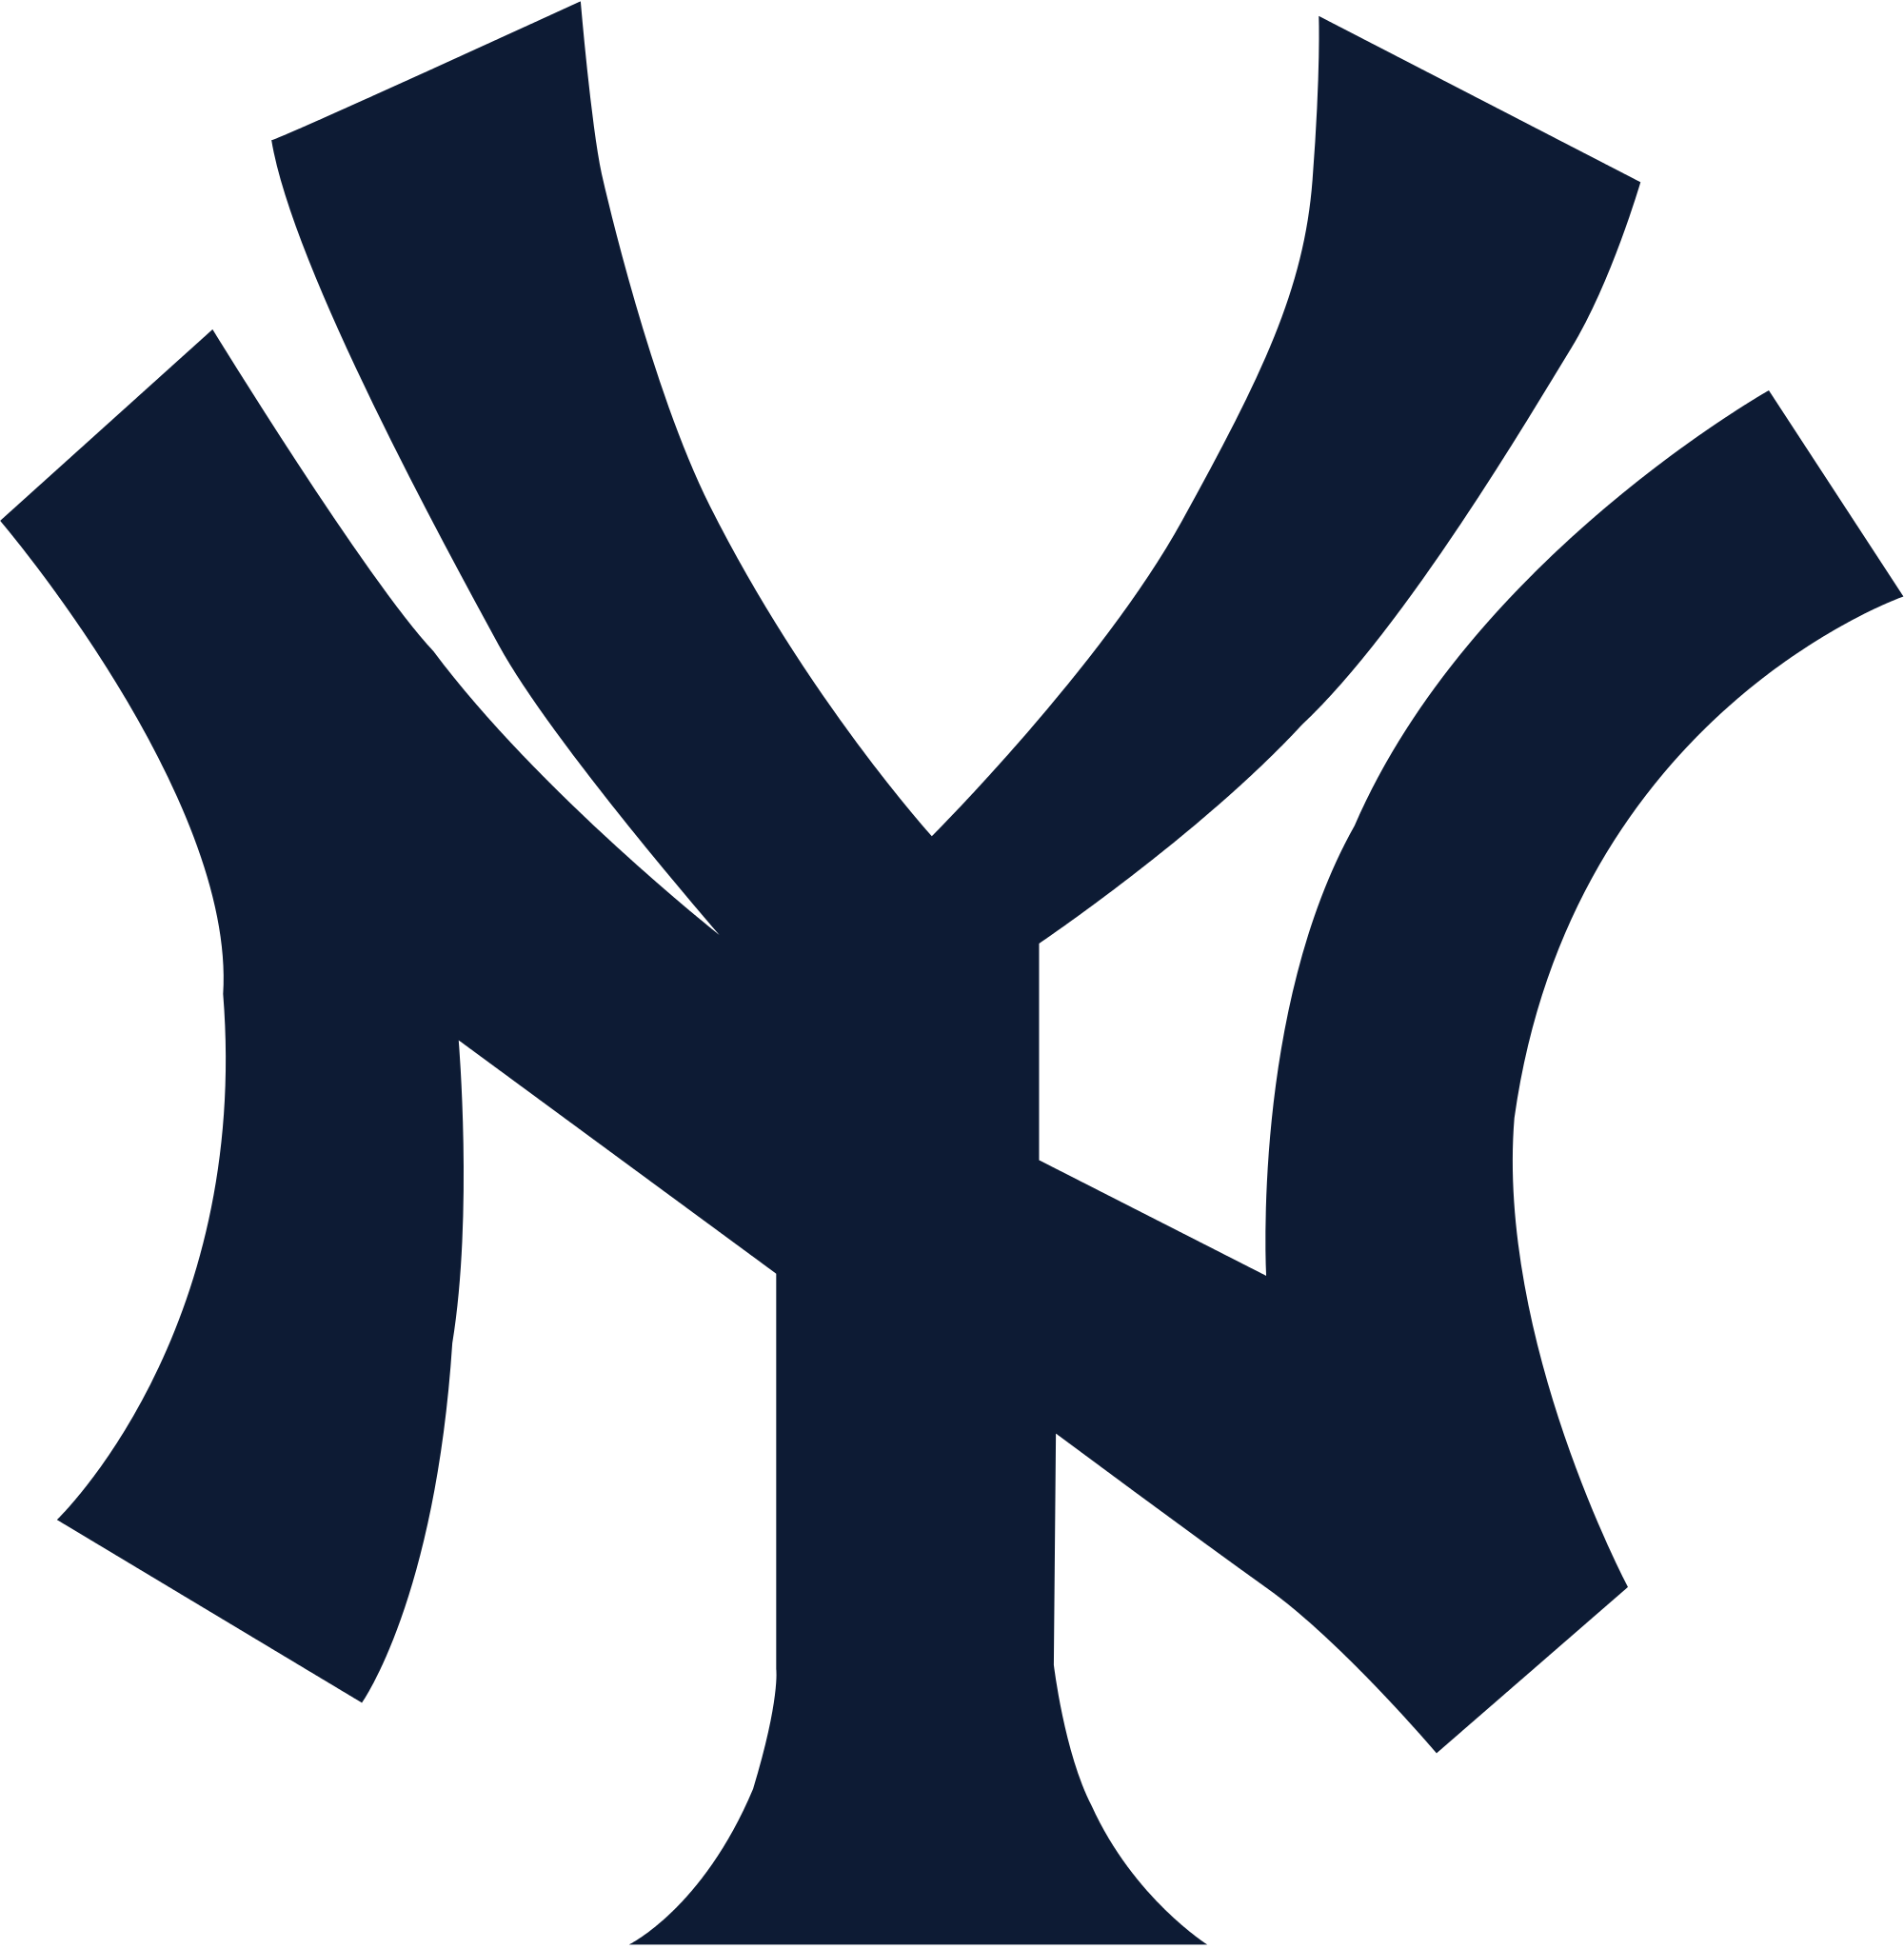 NY Yankees Logo - Ny Yankees PNG Free Transparent Ny Yankees.PNG Images. | PlusPNG